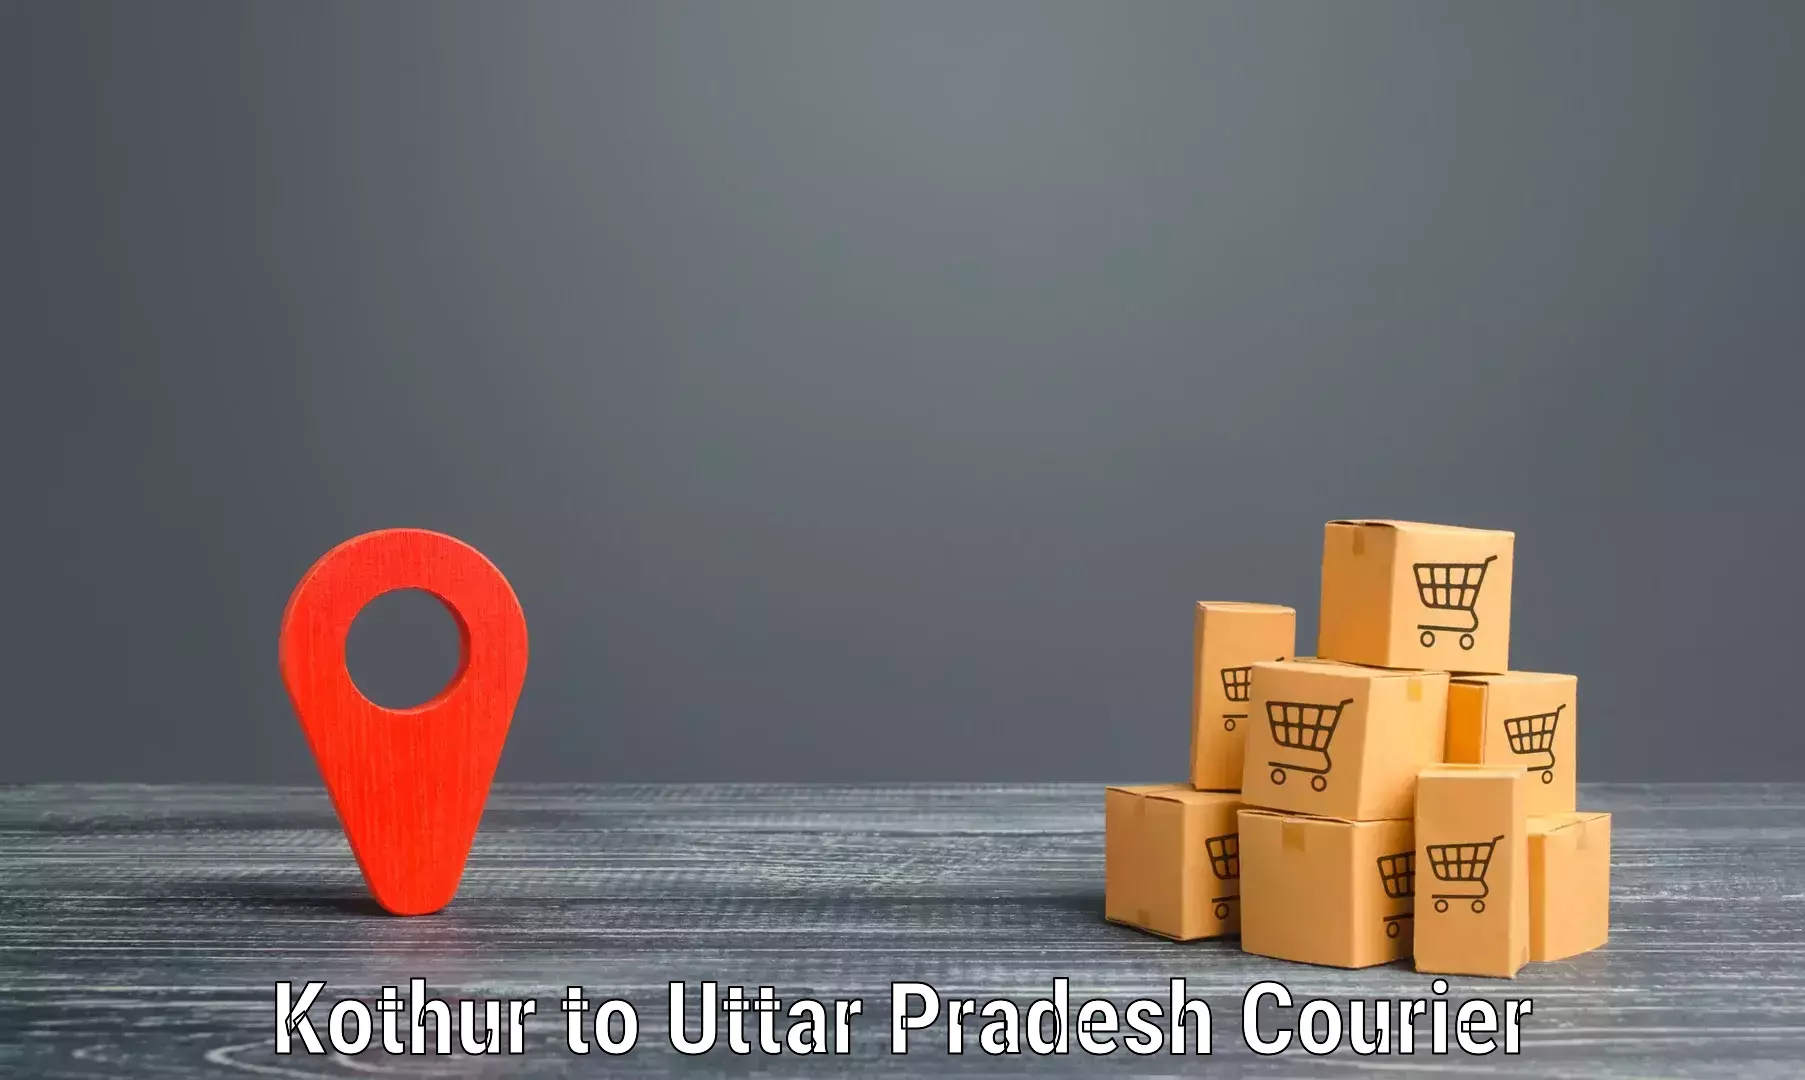 Innovative shipping solutions Kothur to Uttar Pradesh